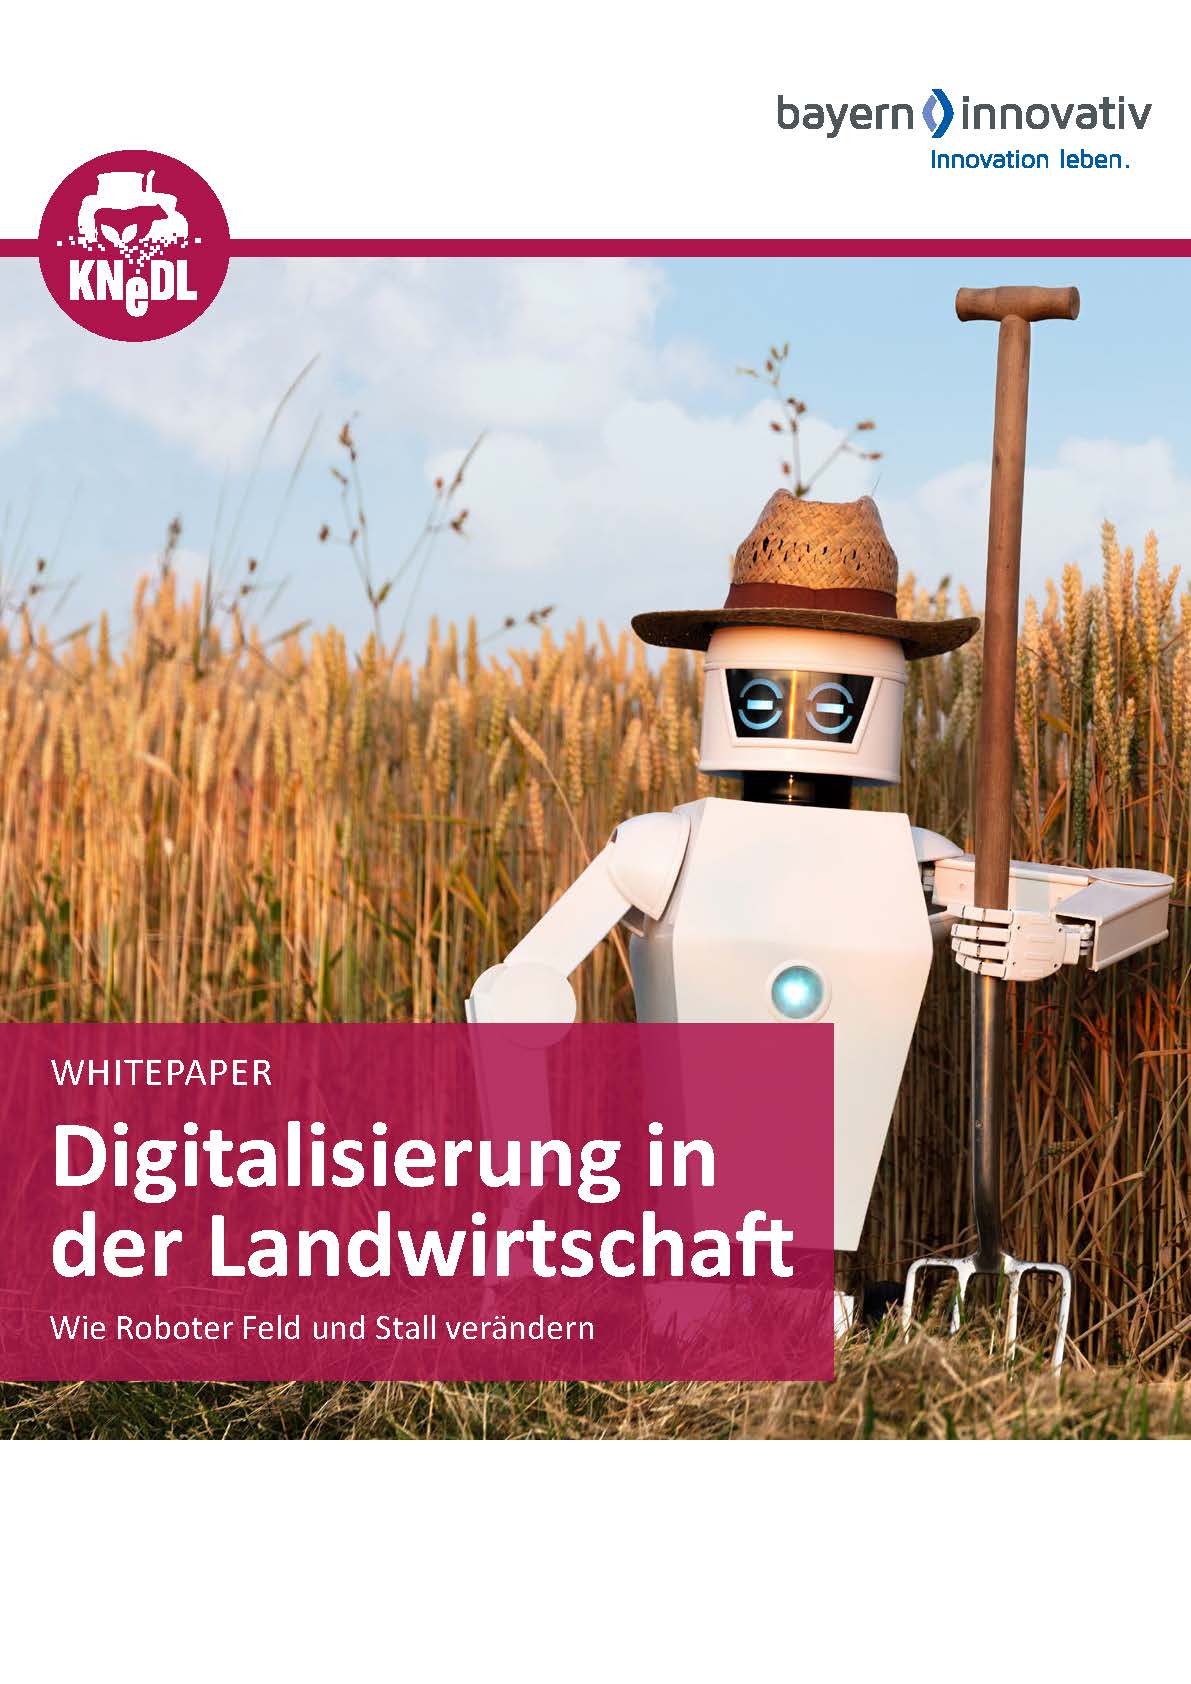 Whitepaper: Digitalisierung in der Landwirtschaft